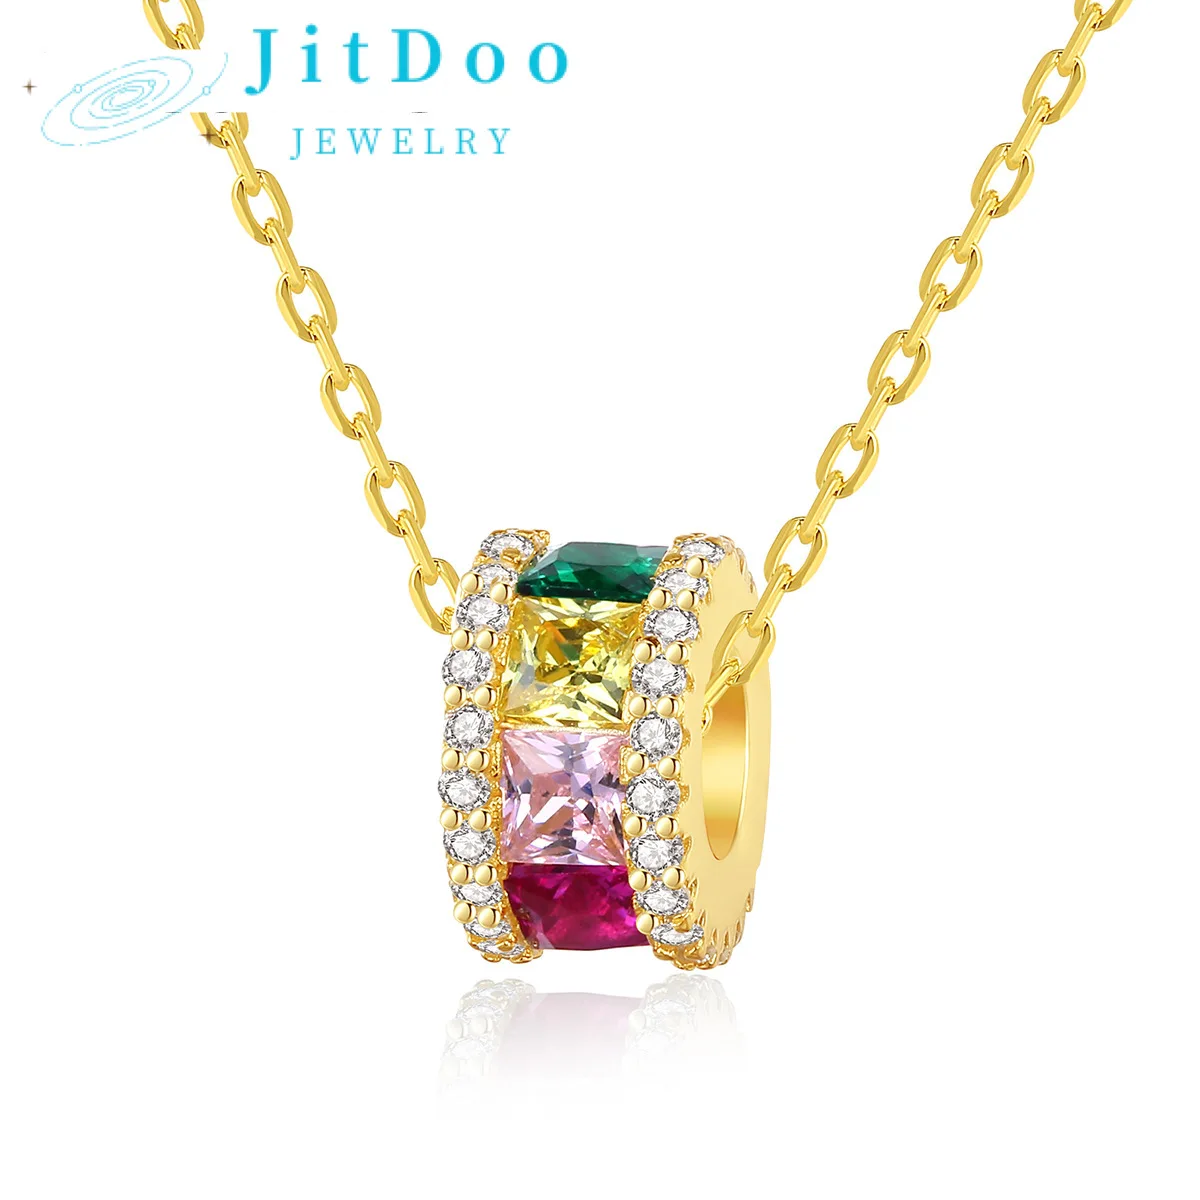 

Цветное ожерелье JitDoo S925 серебряная подвеска цепочка на ключицу цветная циркониевая простая модная для женщин подарок на день Святого Валентина драгоценность